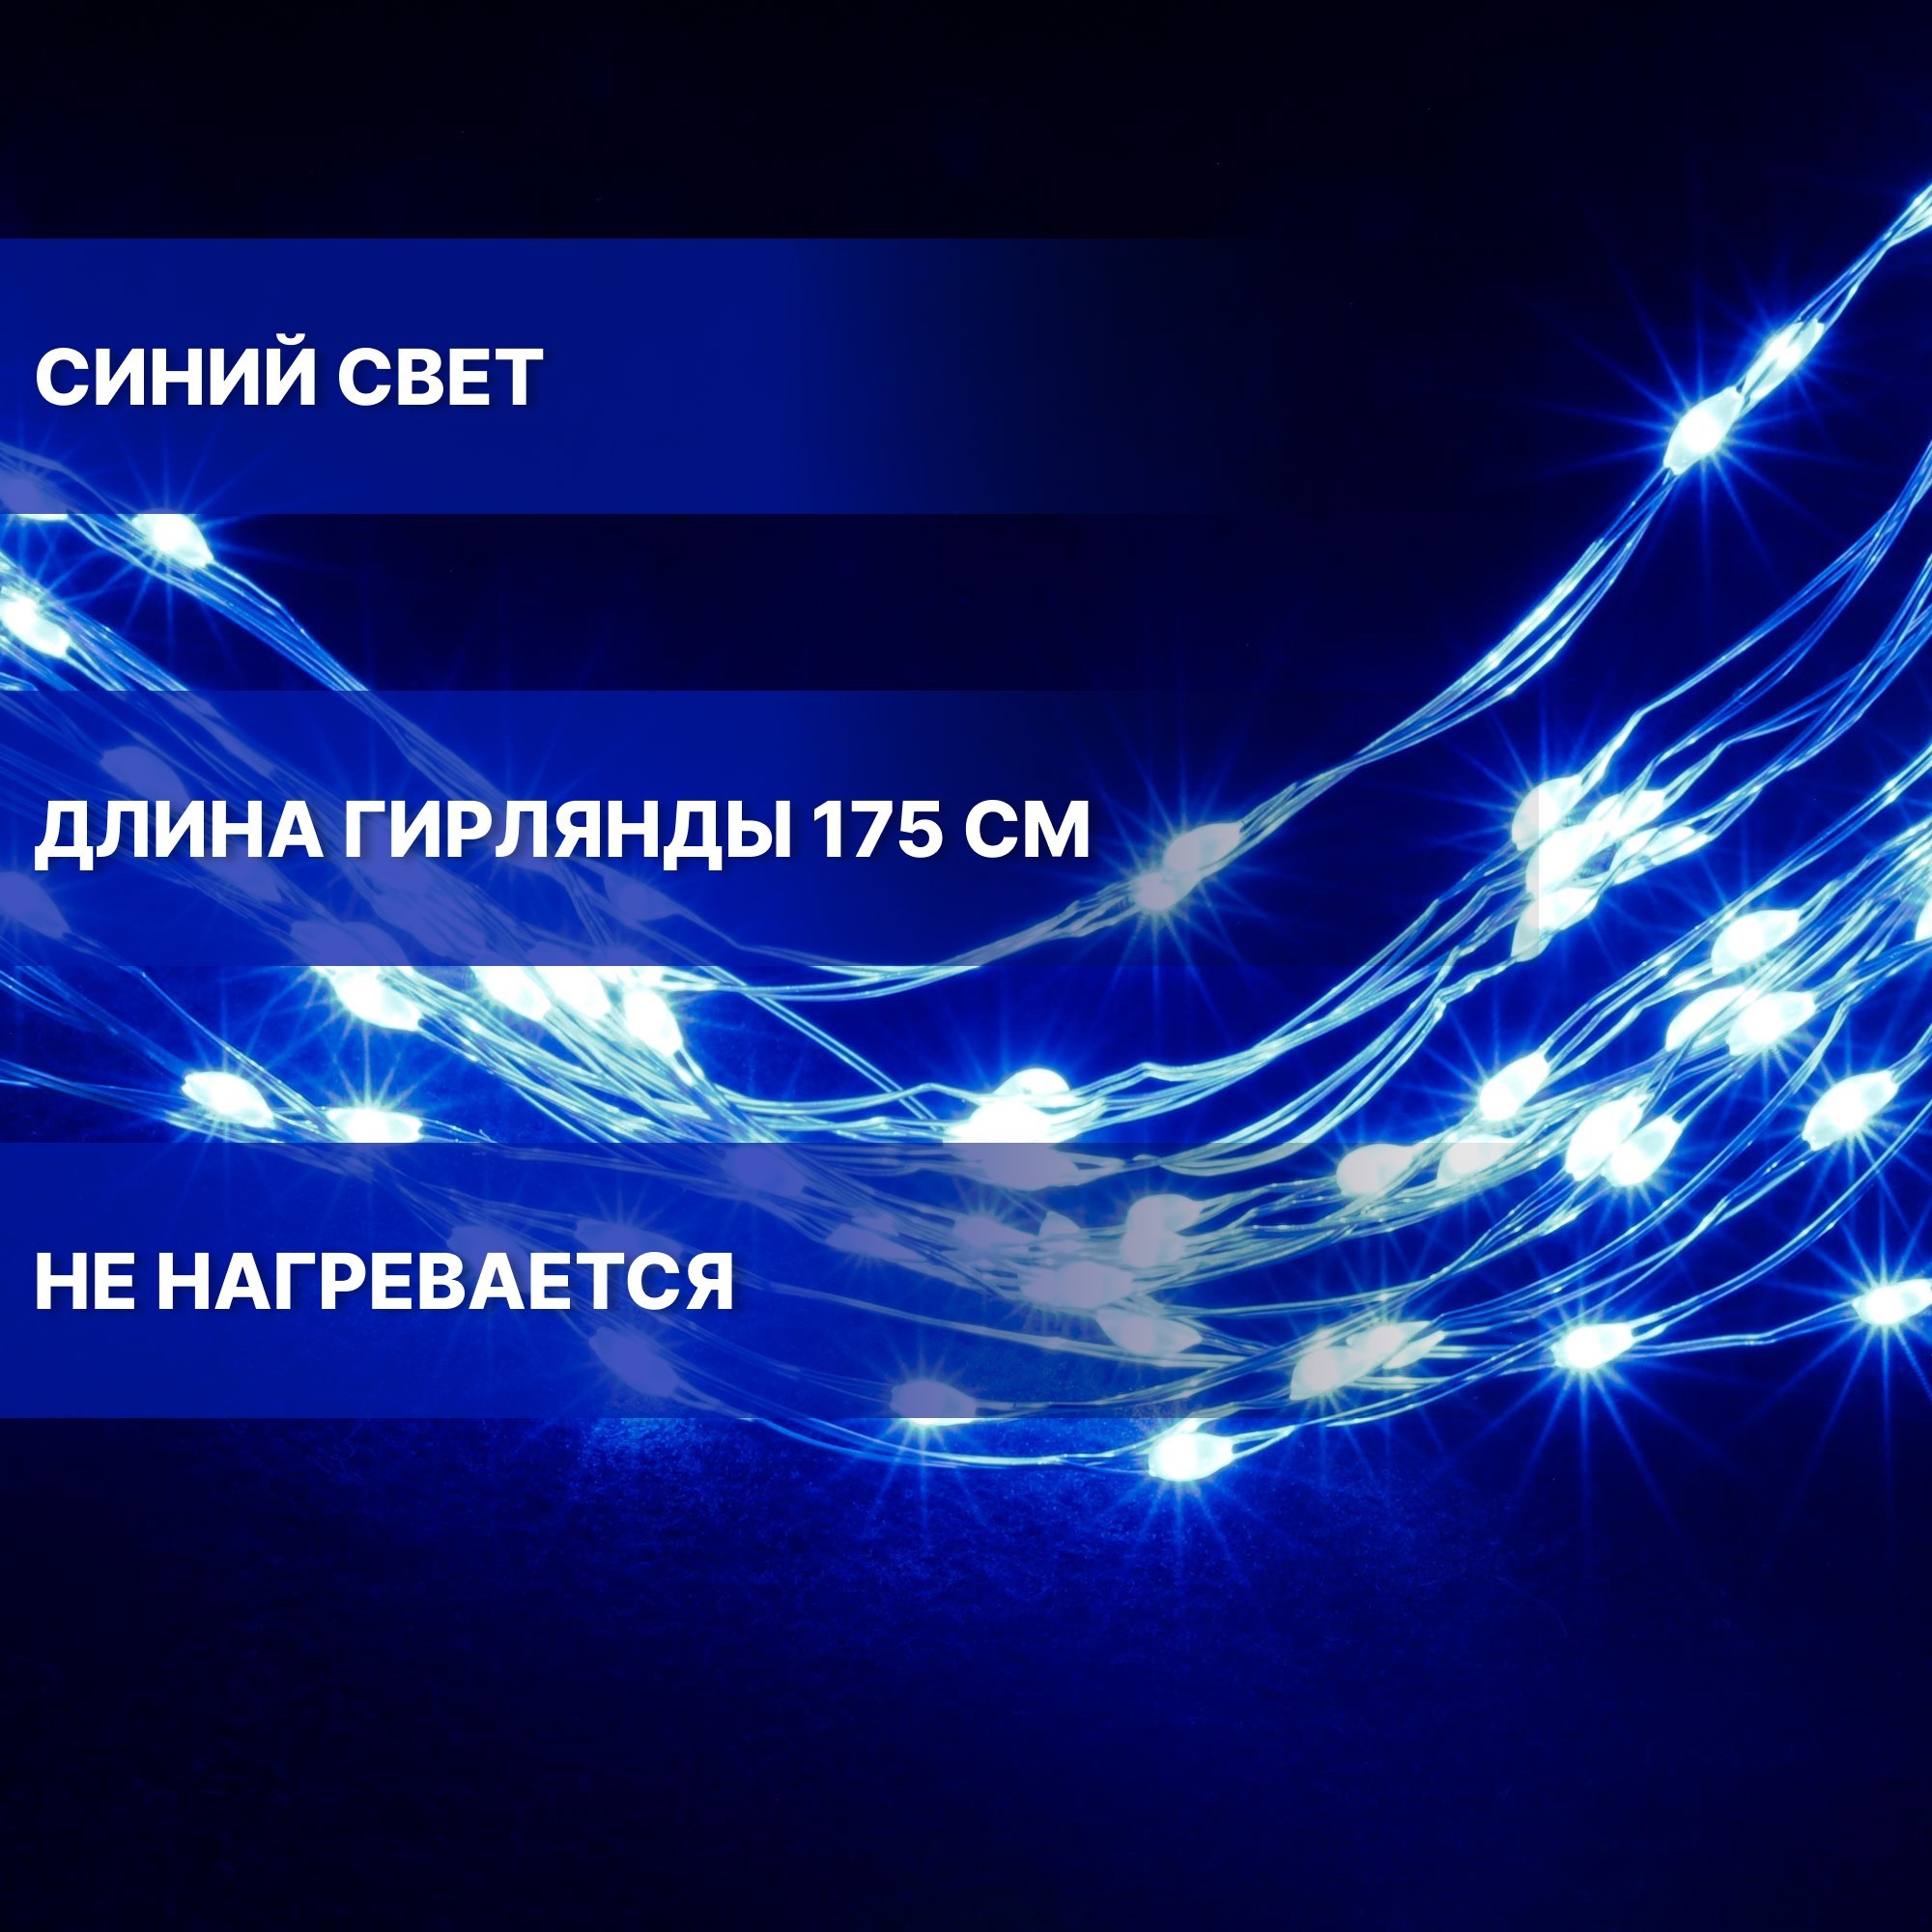 Электрогирлянда Best Technology серебристый 720 LED холодный синий со стартовым шнуром - фото 5